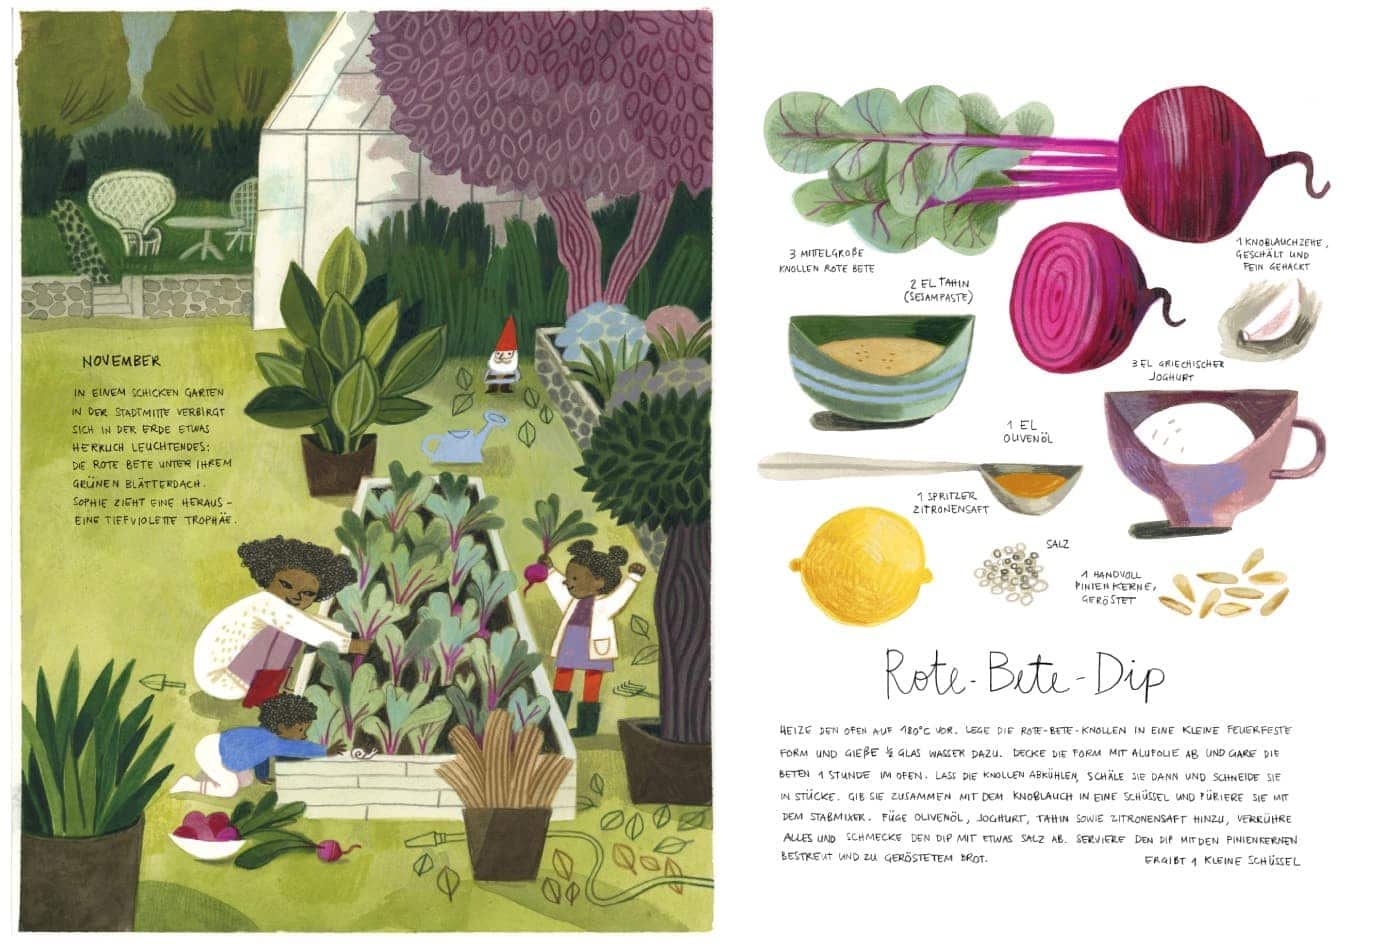 Kinderbuch-Tipp rund ums Gärtnern und Natur erleben mit Kindern: Huet pflanz ich, morgen koch ich ... mit Rezepten: Rote Bete-Dip // HIMBEER